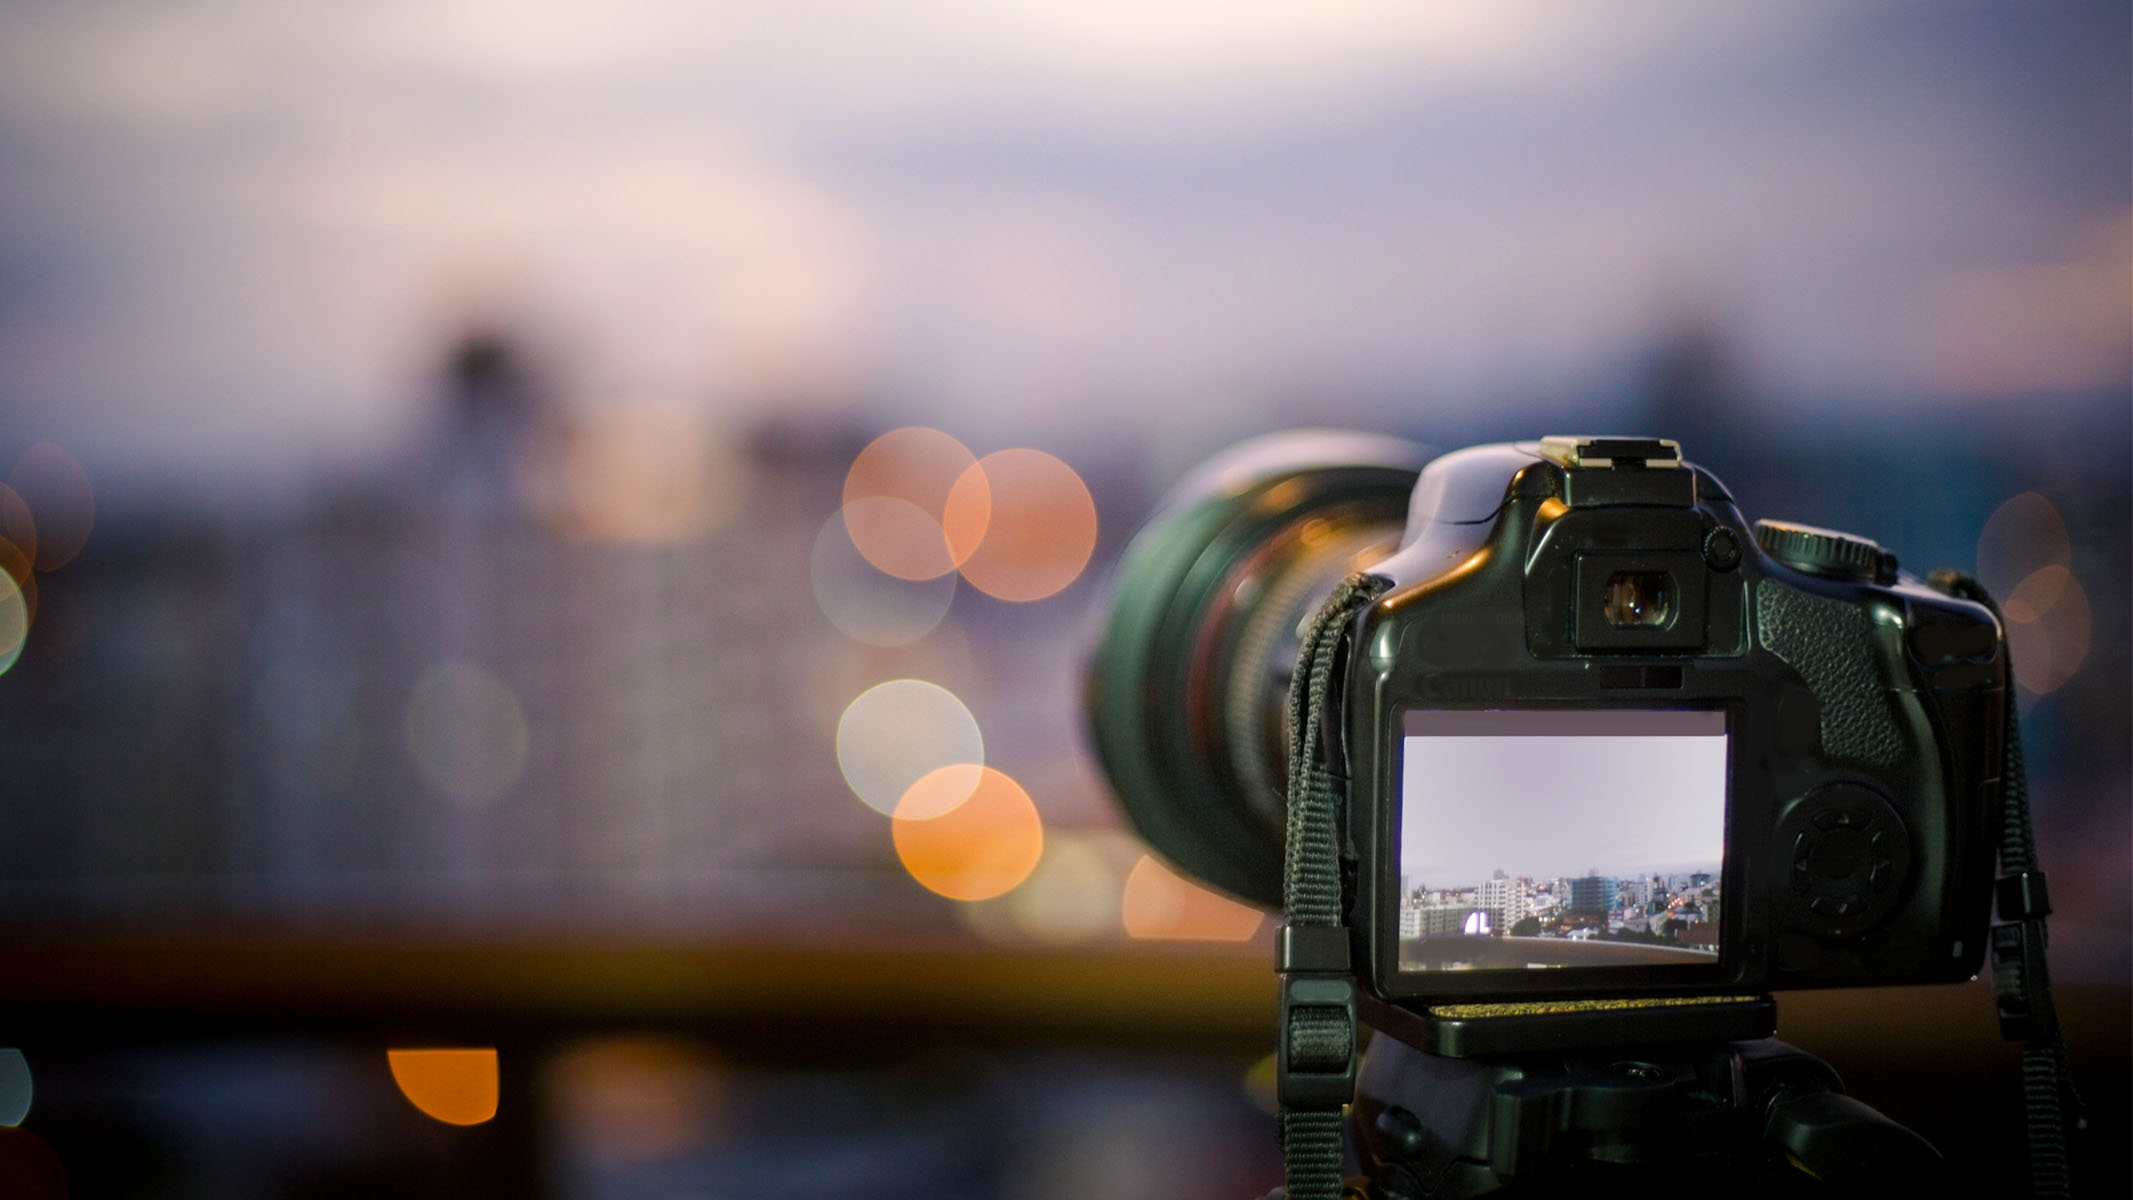 DSLR fotoaparatas, pastatytas prieš saulėlydį su vaizdu į nefokusuotą miestą